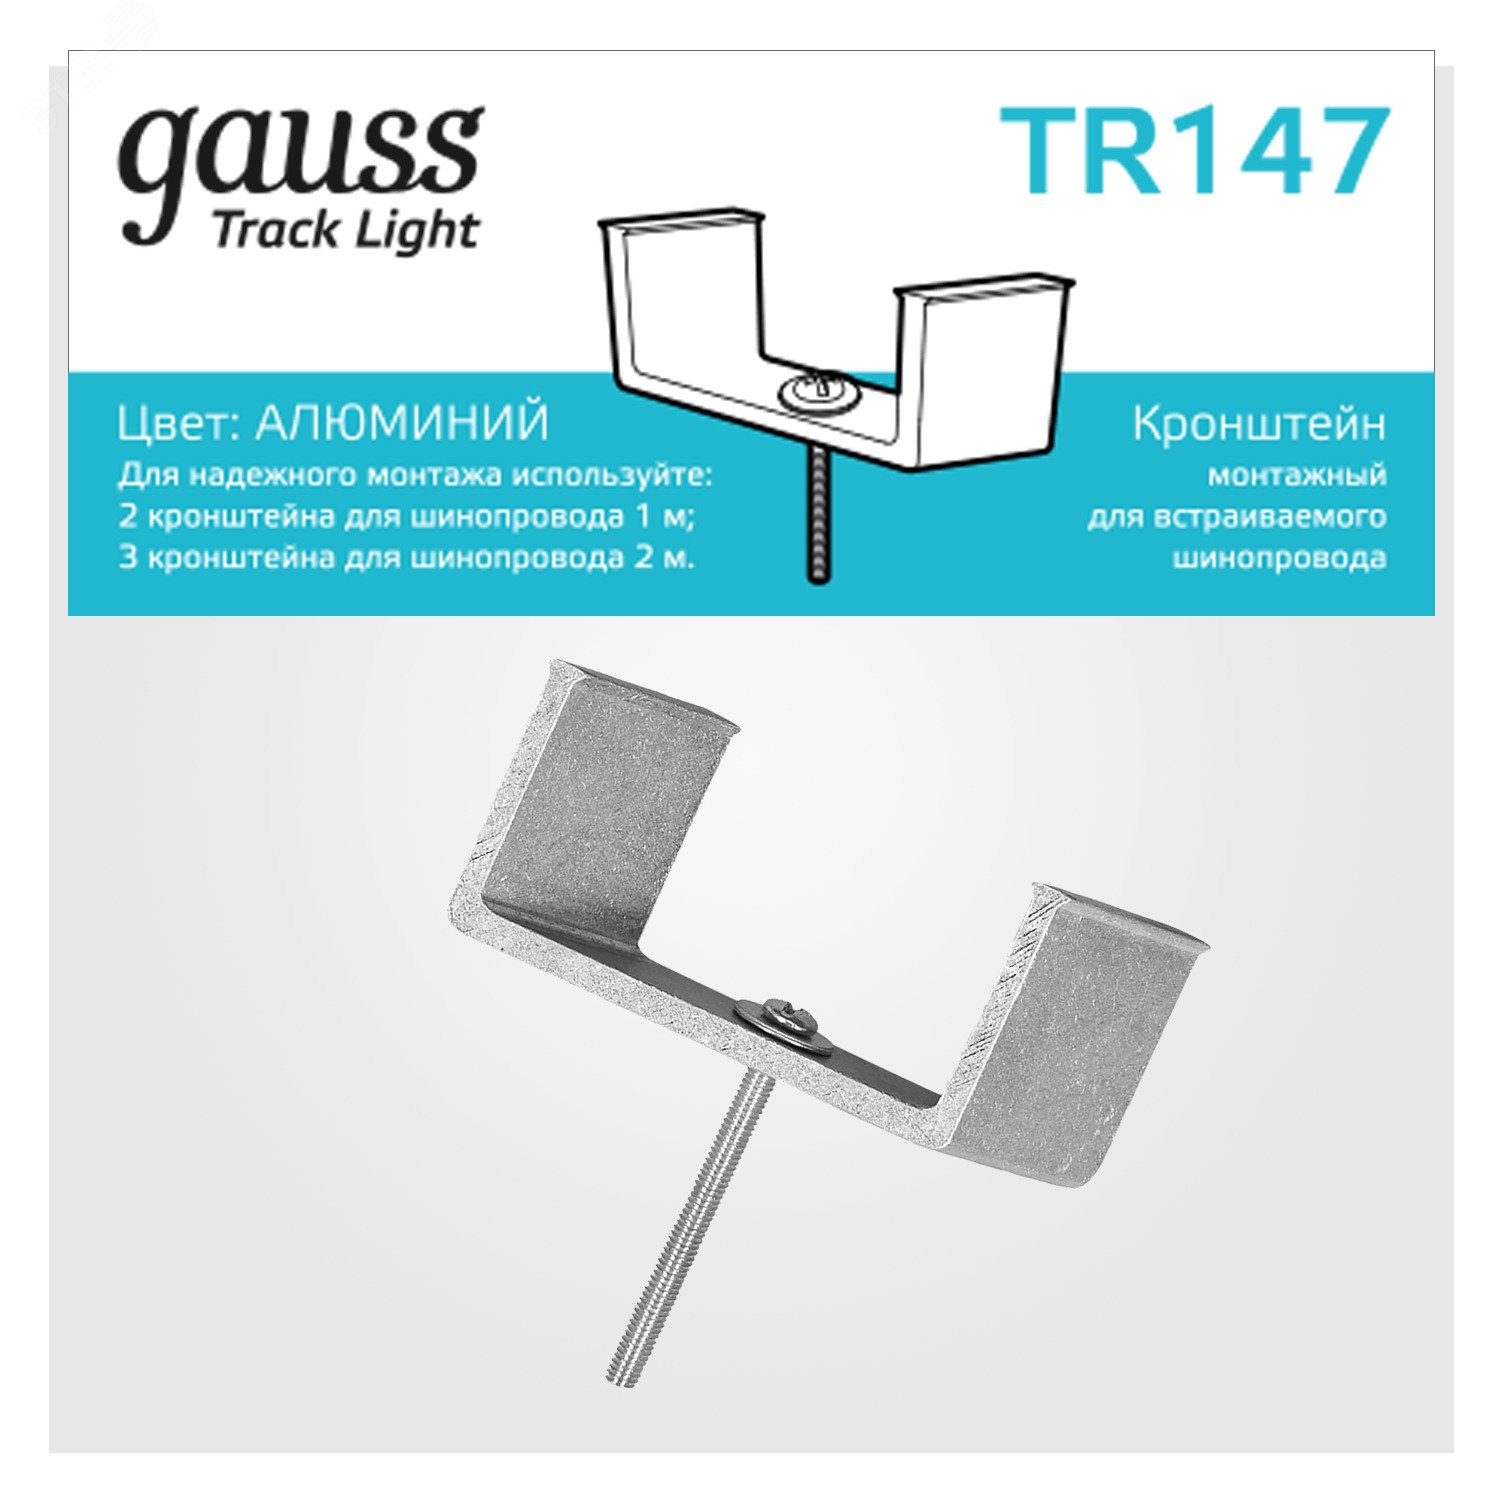 Кронштейн монтажный для встраиваемого шинопровода однофазный TR147 GAUSS - превью 3